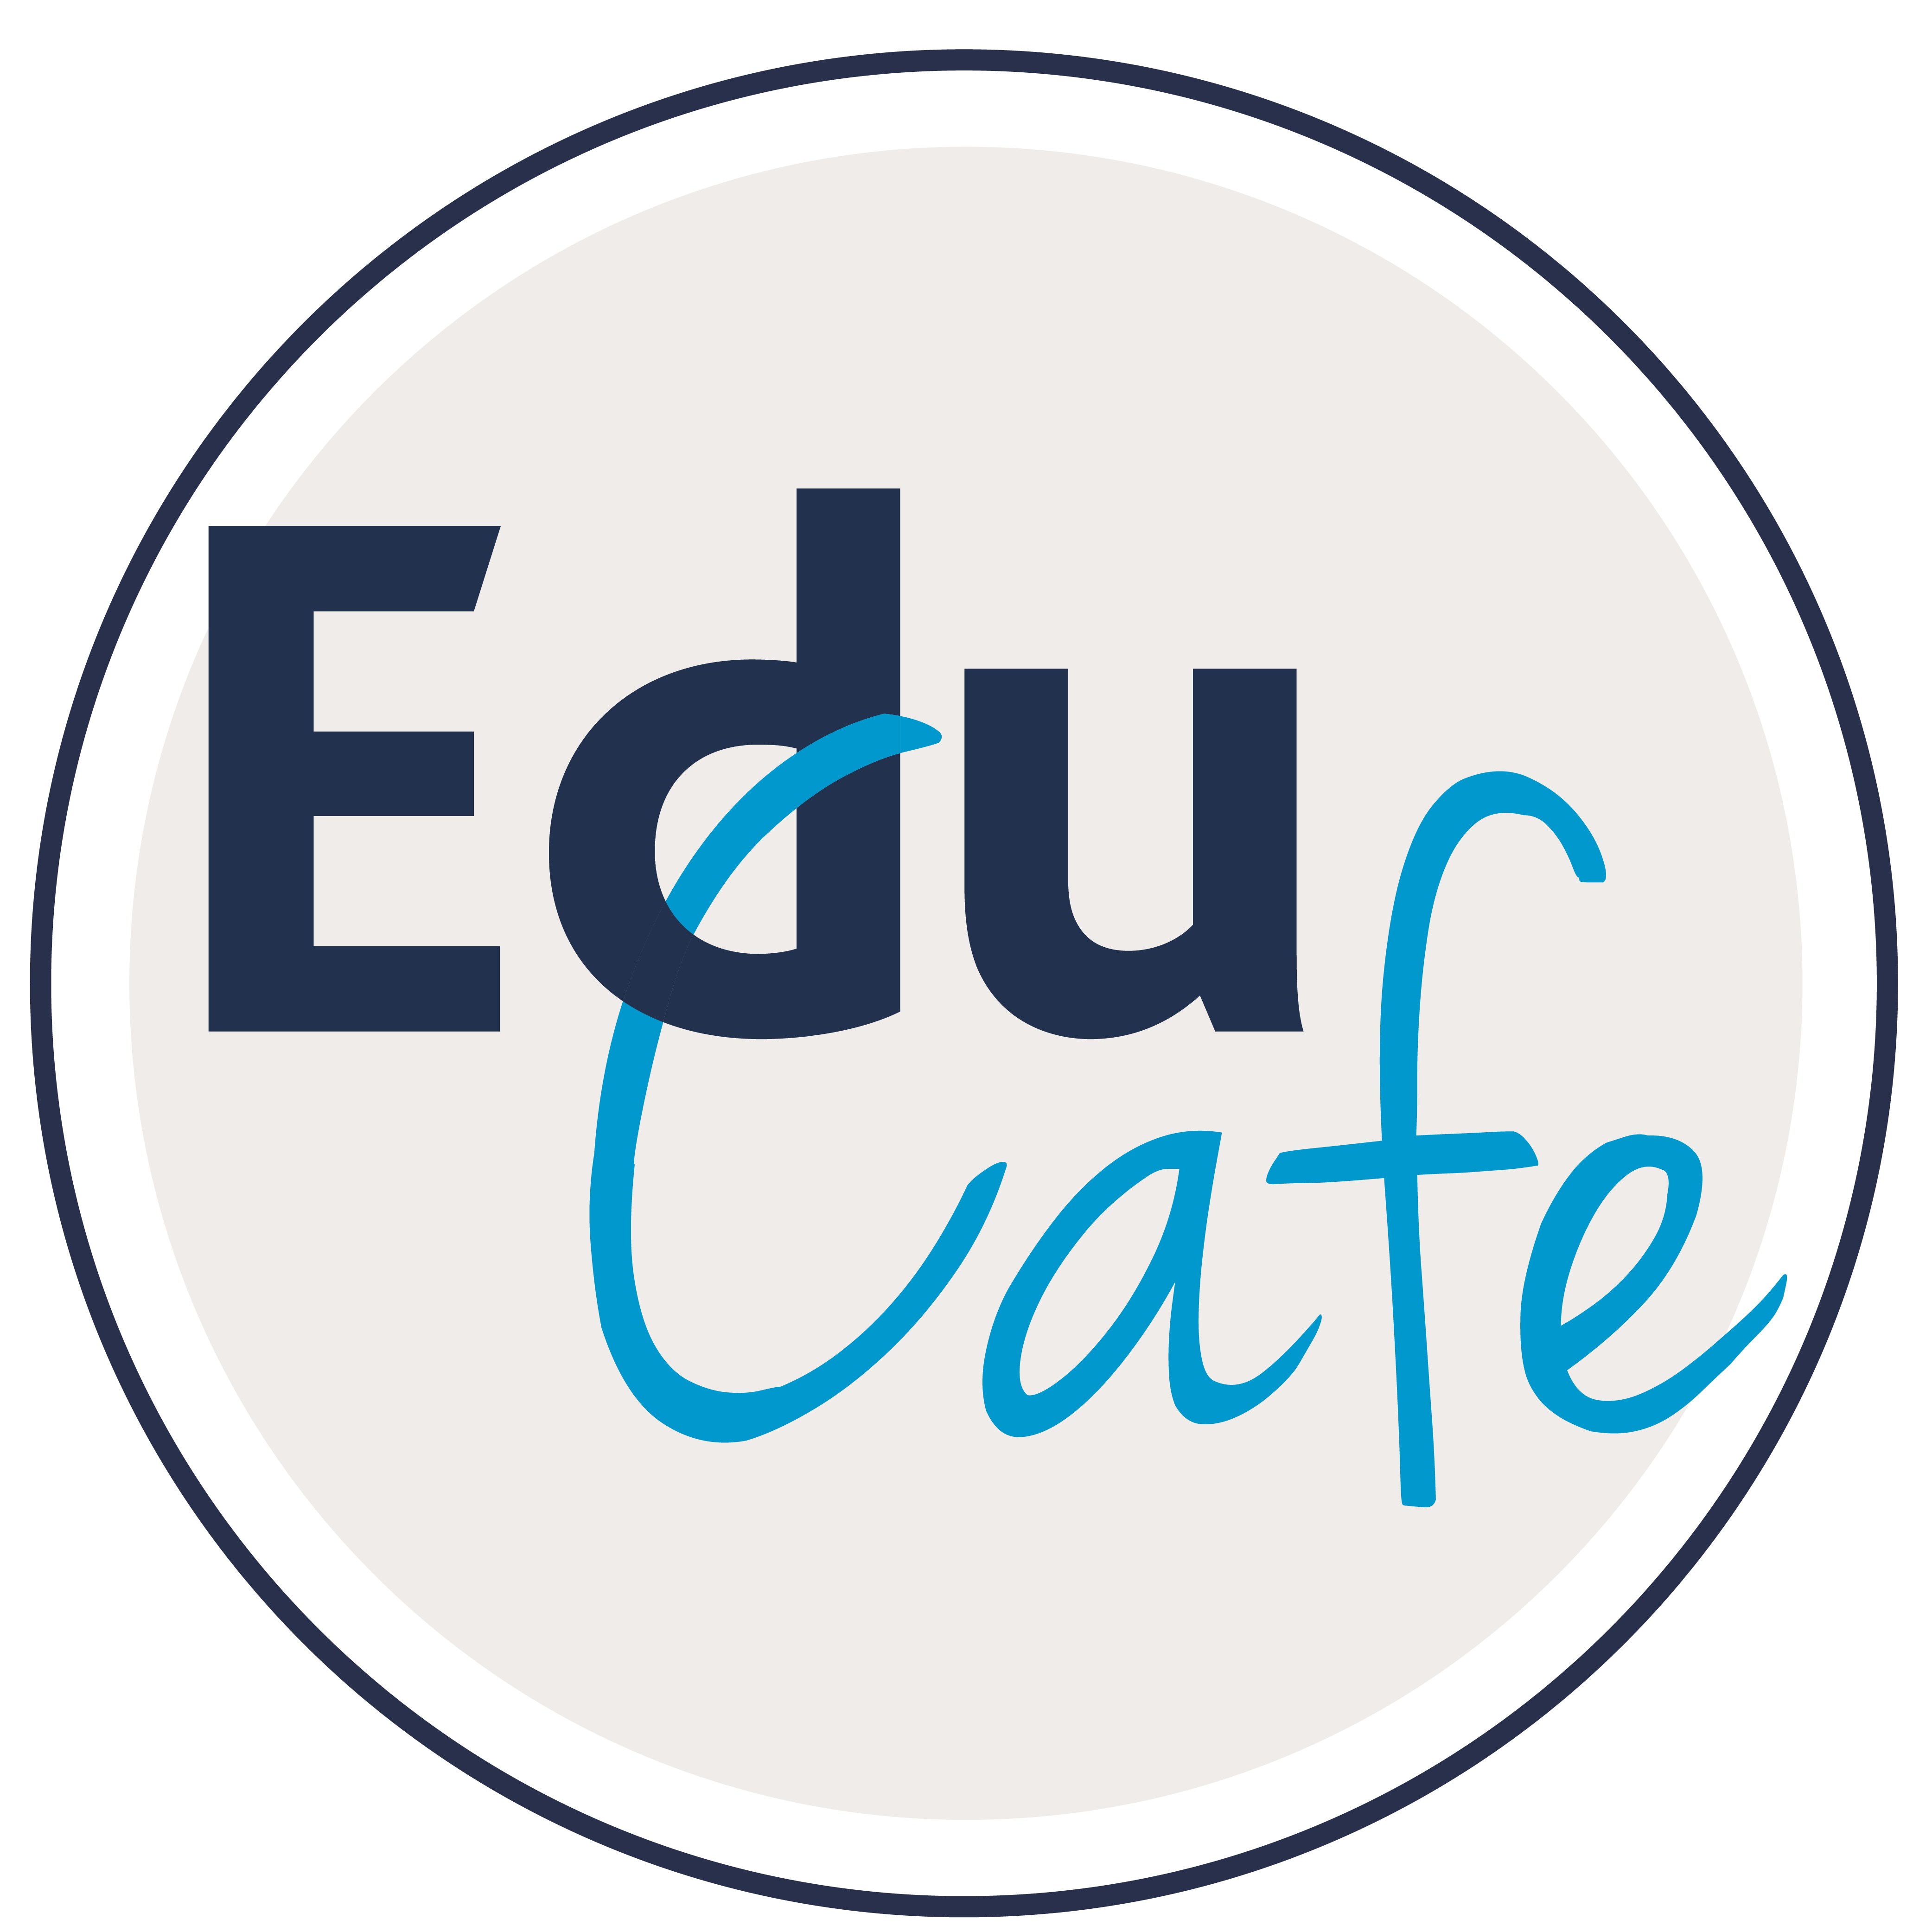 The Educafe logo